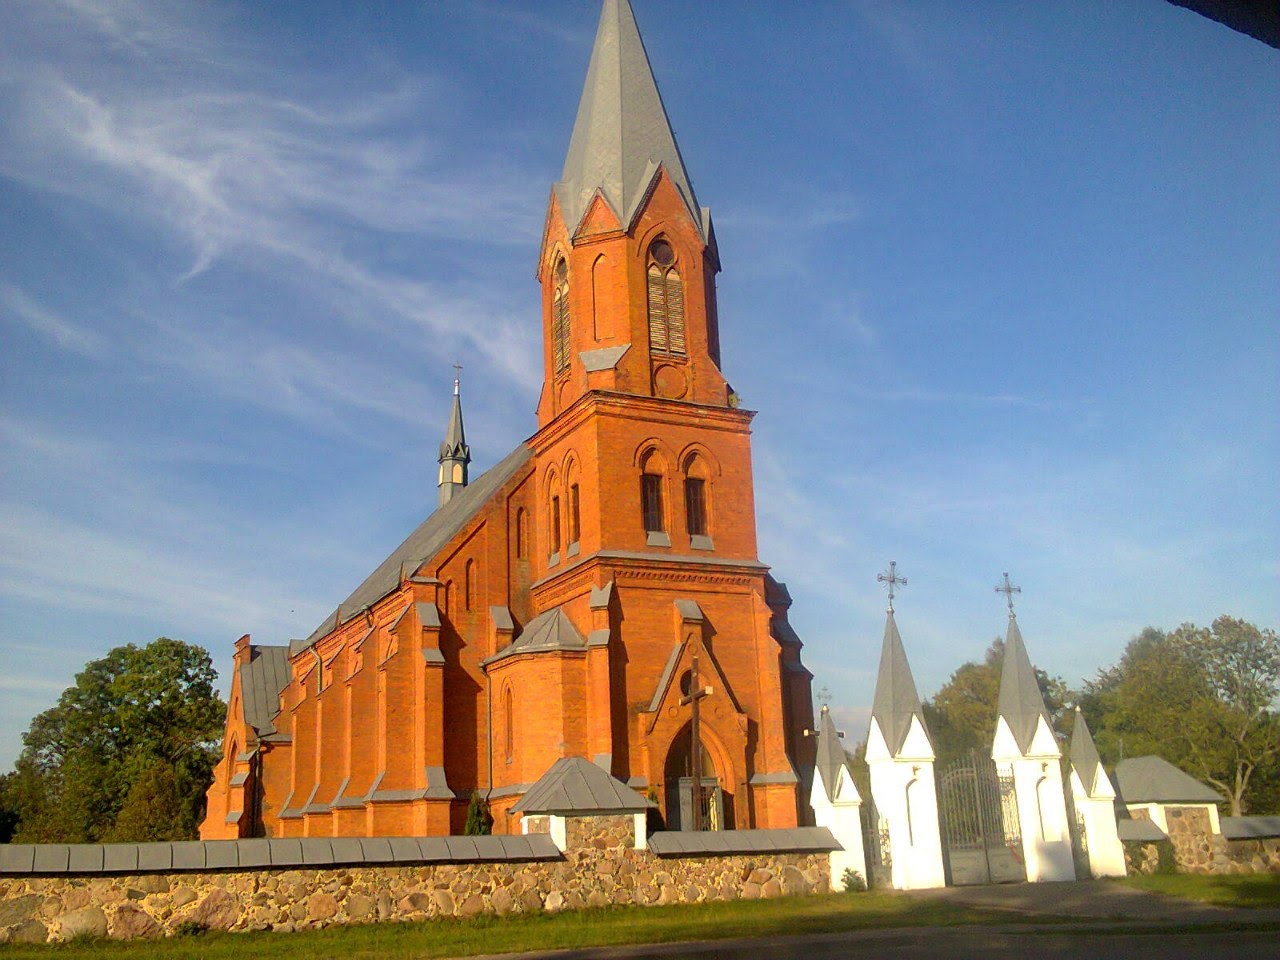 Kostel Svyatogo Vladislava - Костел Святого Владислава в Суботниках